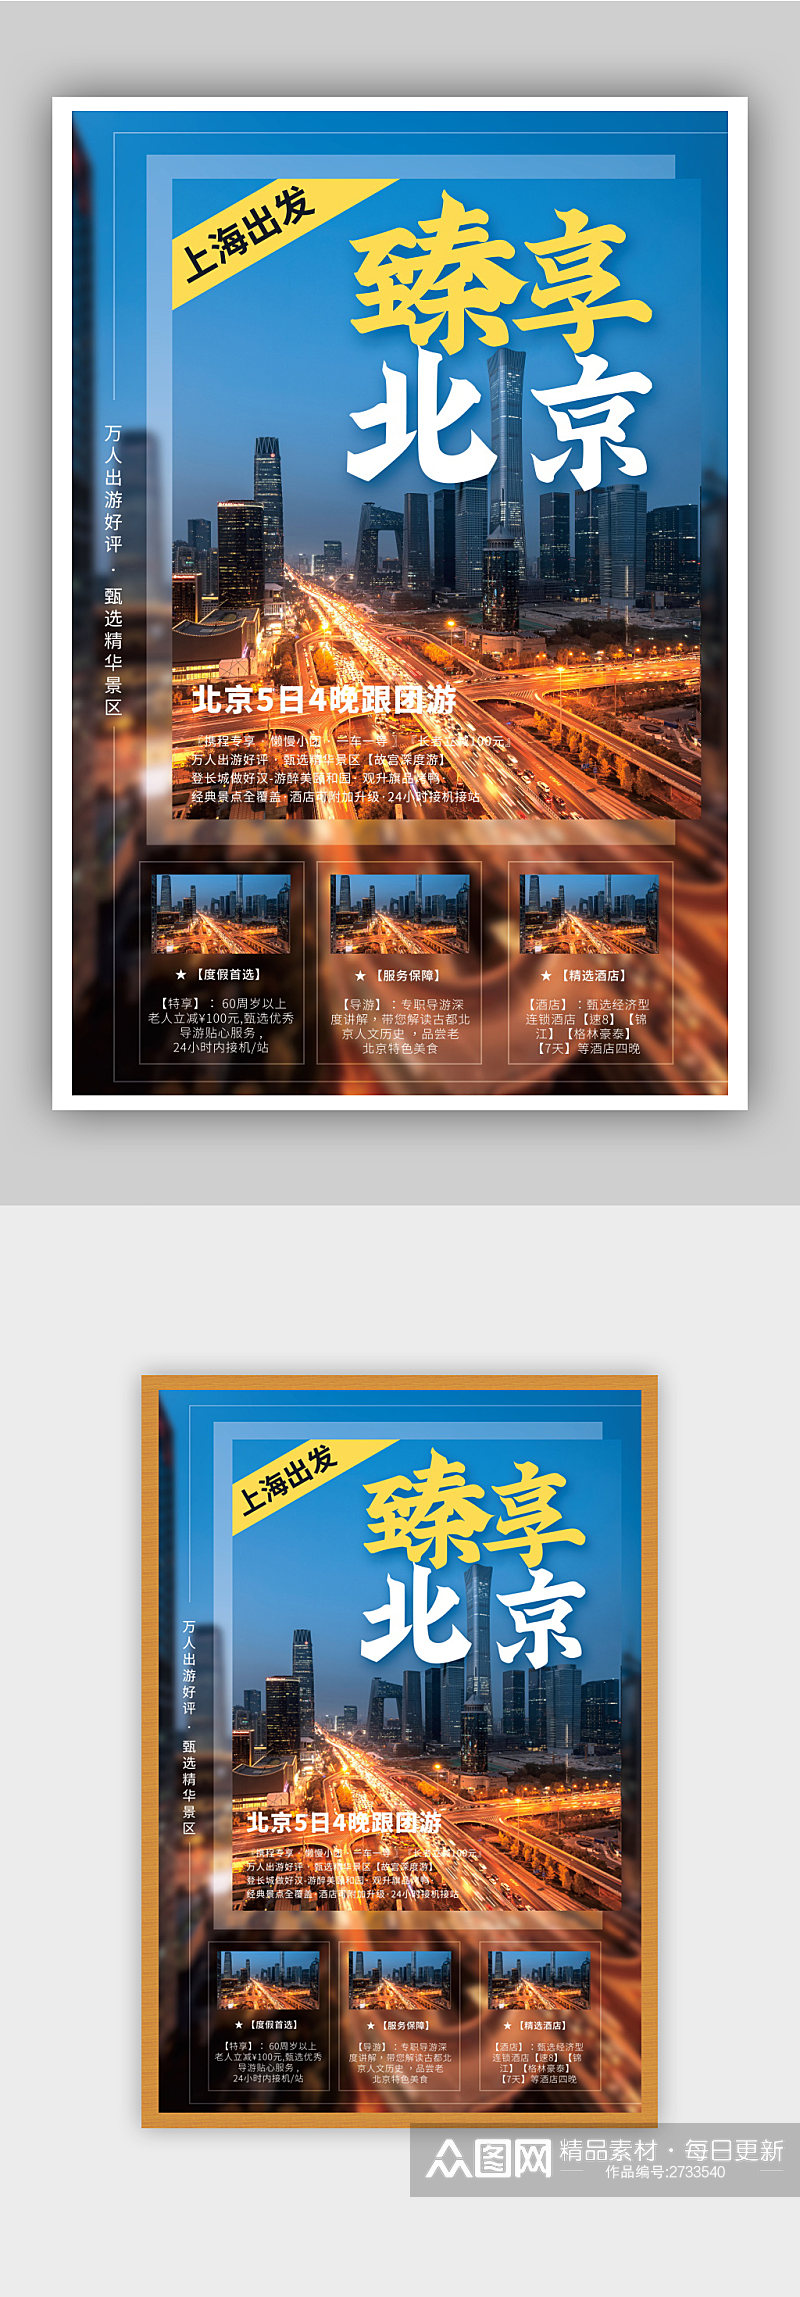 蓝色北京旅游海报素材